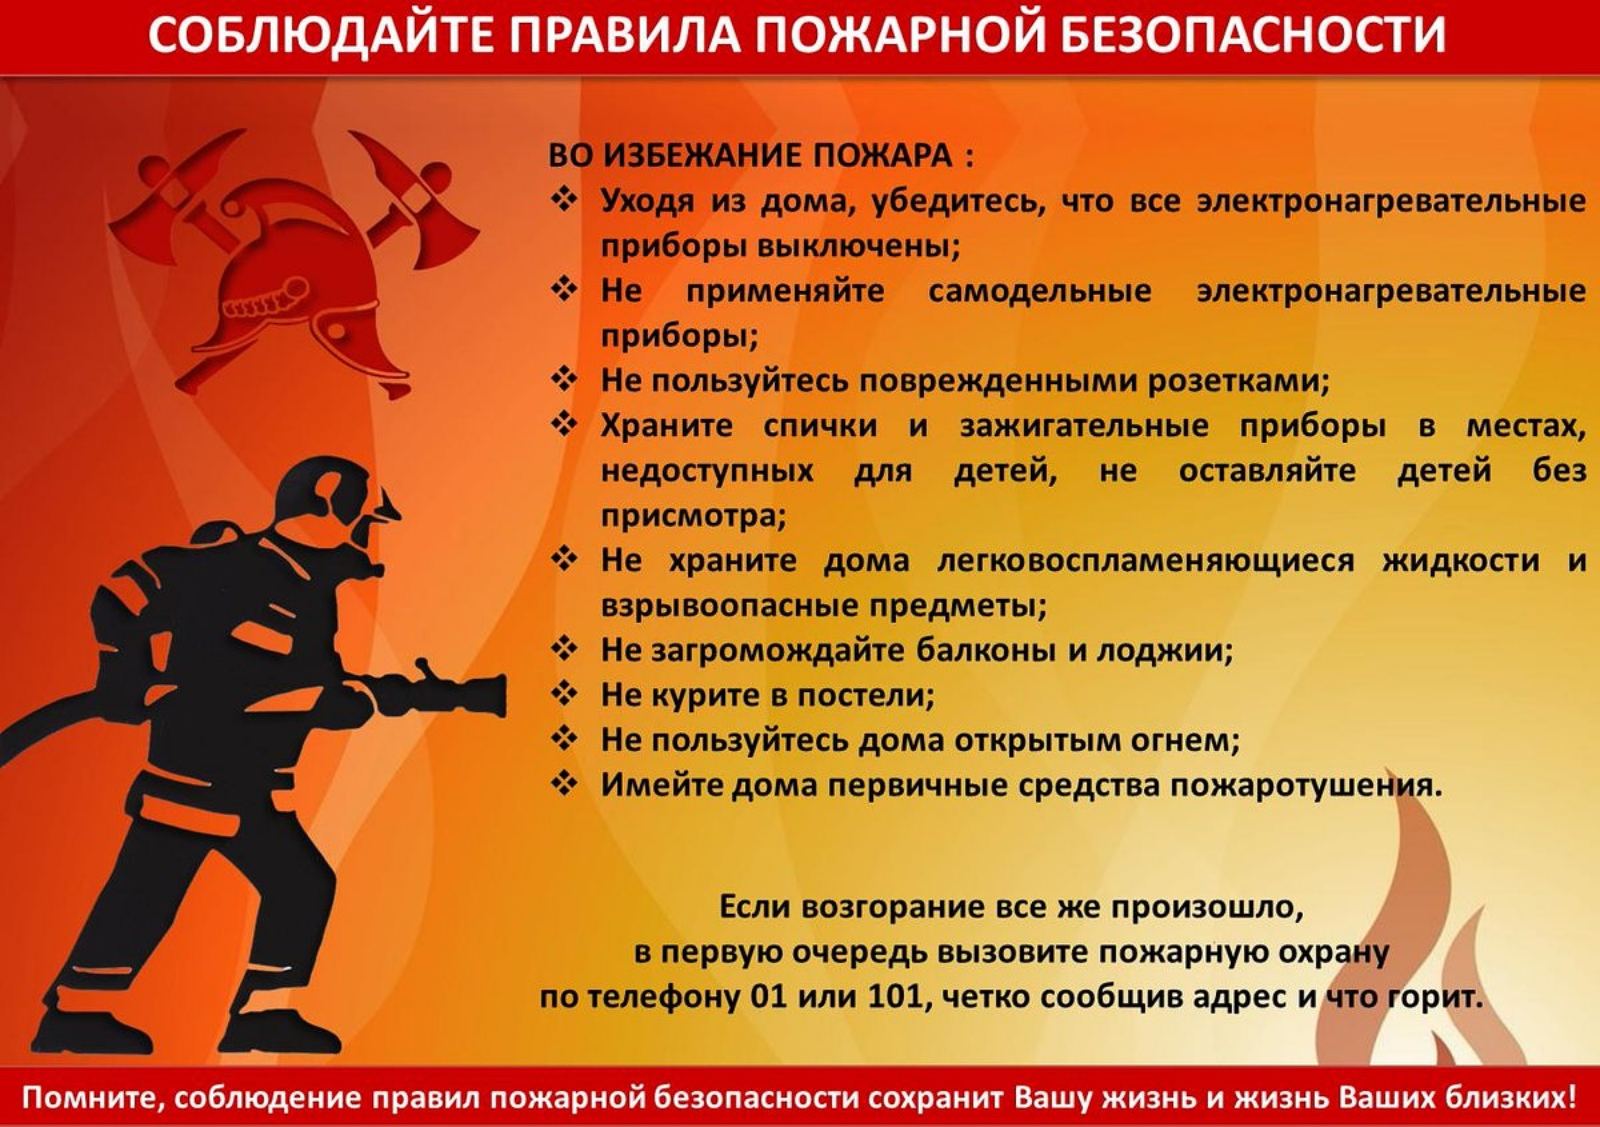 Пожарной безопасности в организации 2020 году. Памятки МЧС России по пожарной безопасности. Соблюдайте правила пожарной безопасности. Правила пожарной безопасно. Союлюдение правилпожарной безопасности.